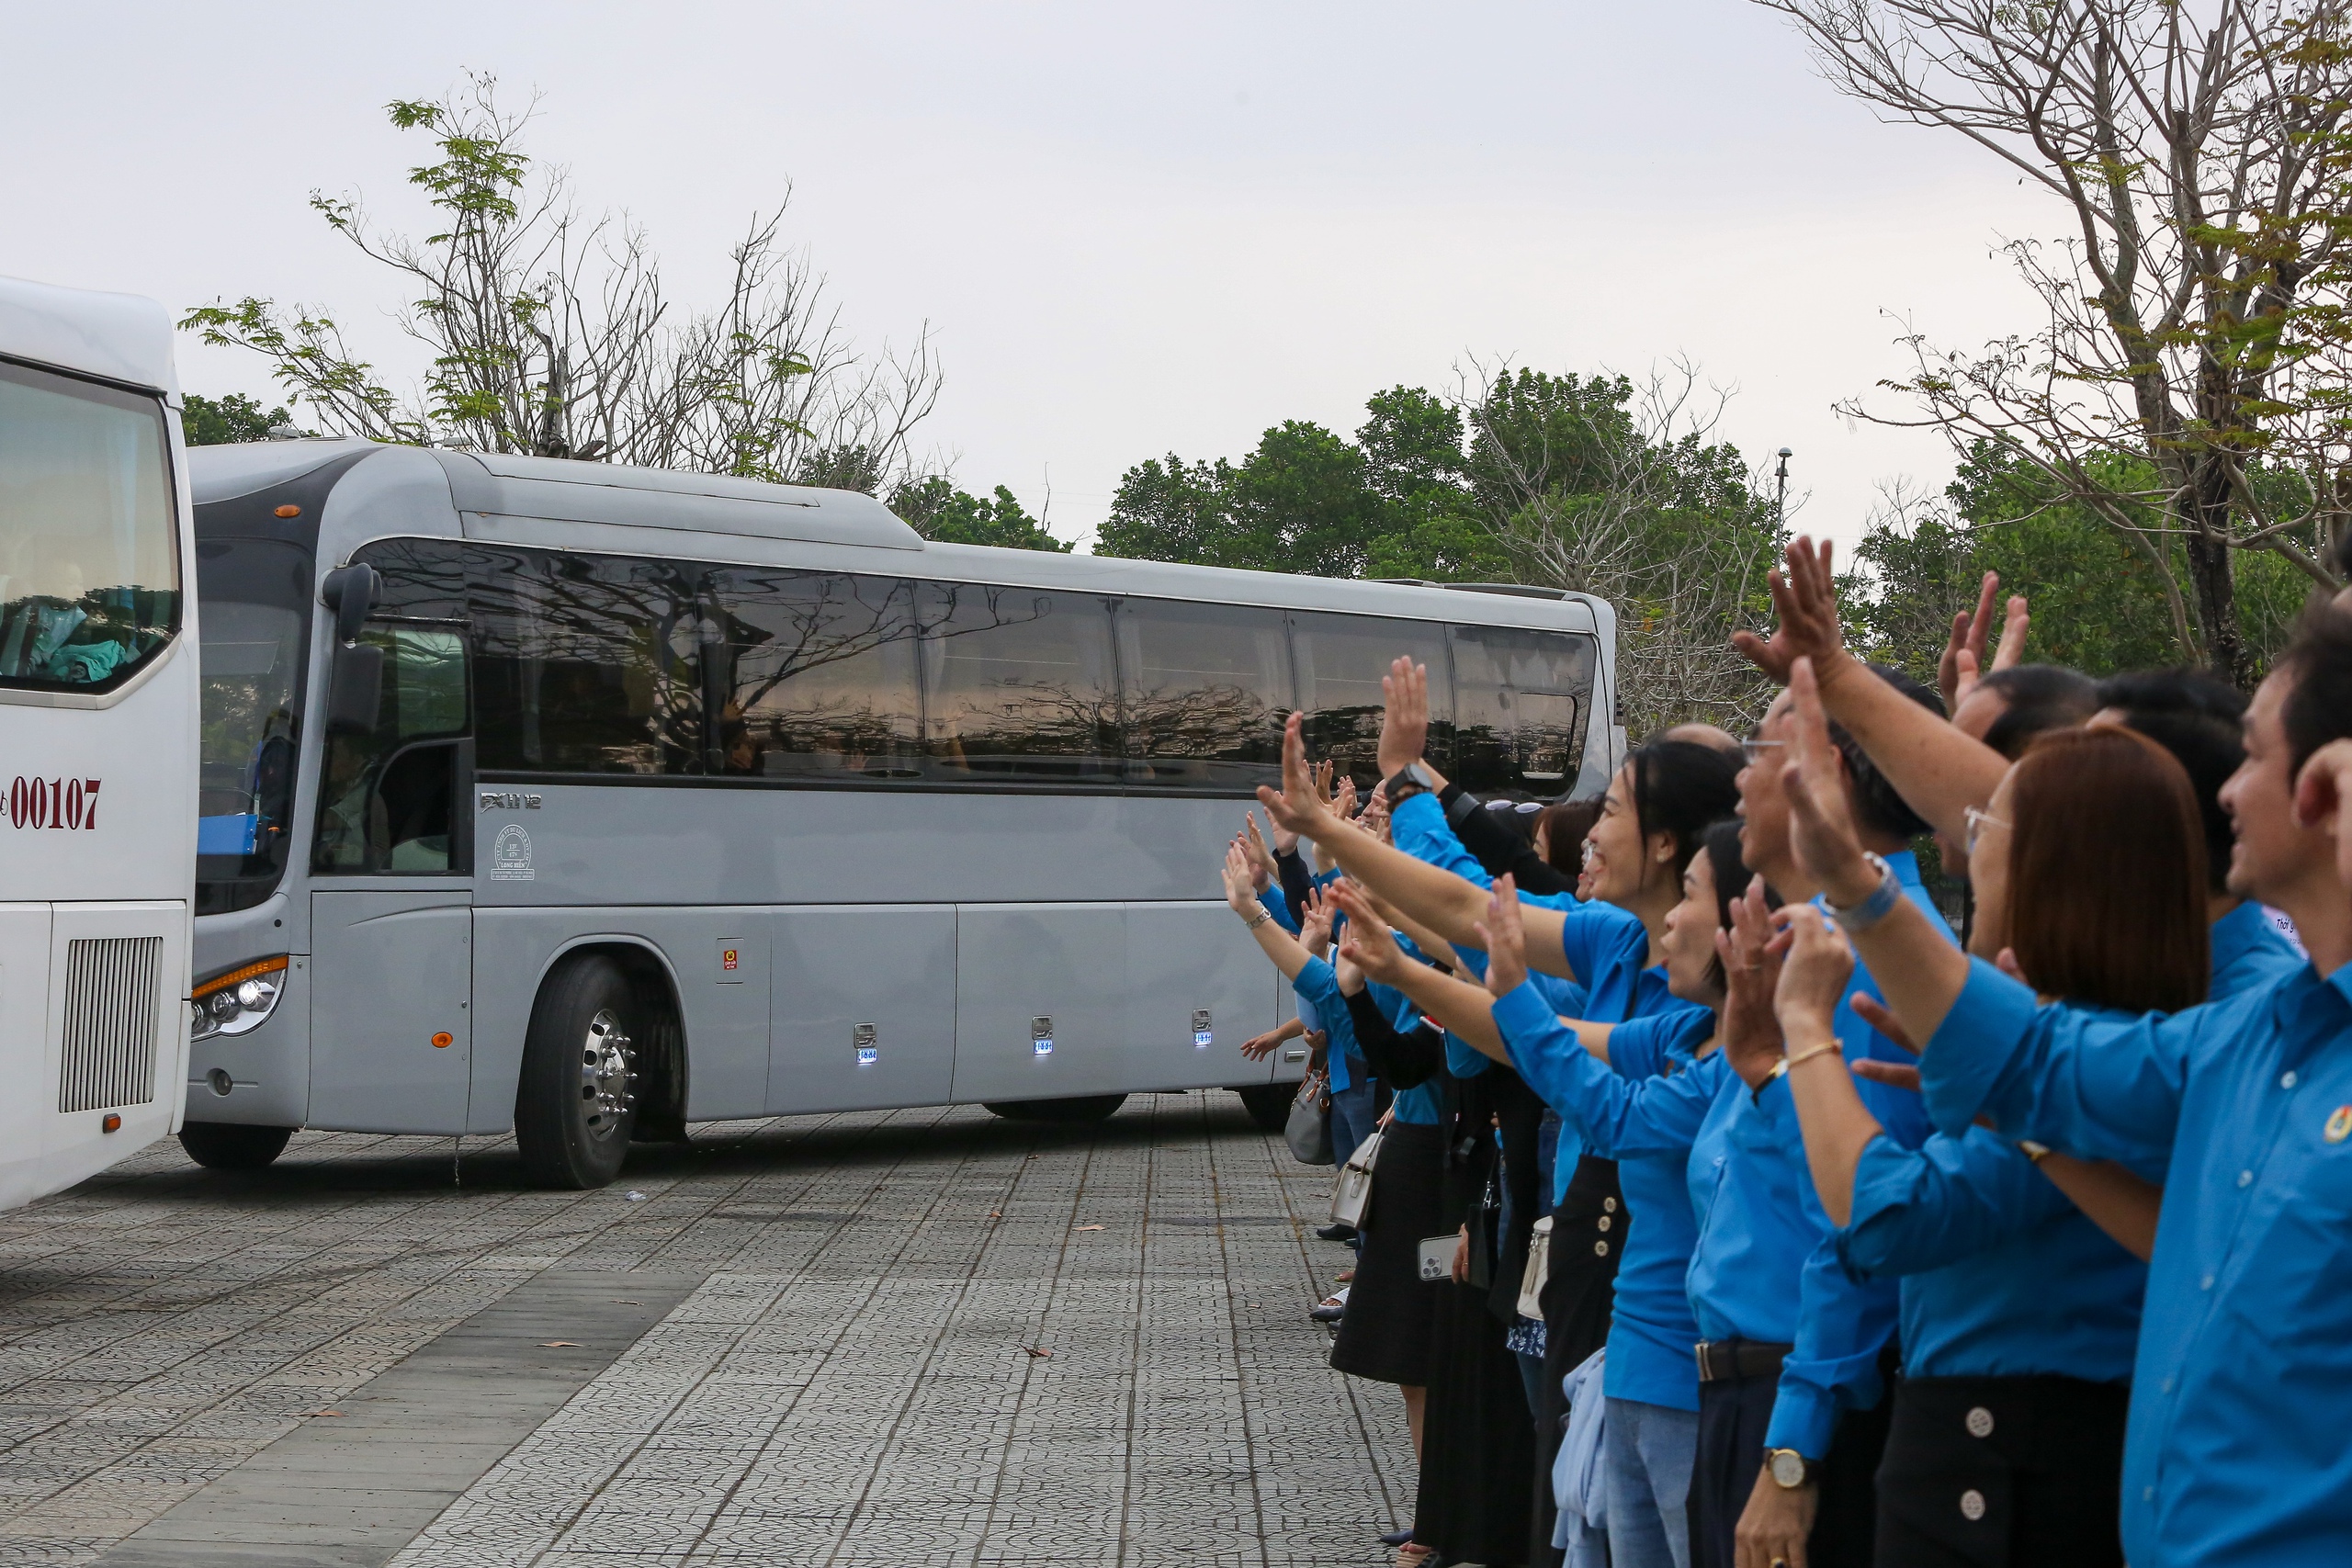 Niềm vui trên những chuyến xe 0 đồng cho hàng ngàn công nhân ở Đà Nẵng: “Tết chỉ trọn vẹn là khi được về nhà” - Ảnh 7.